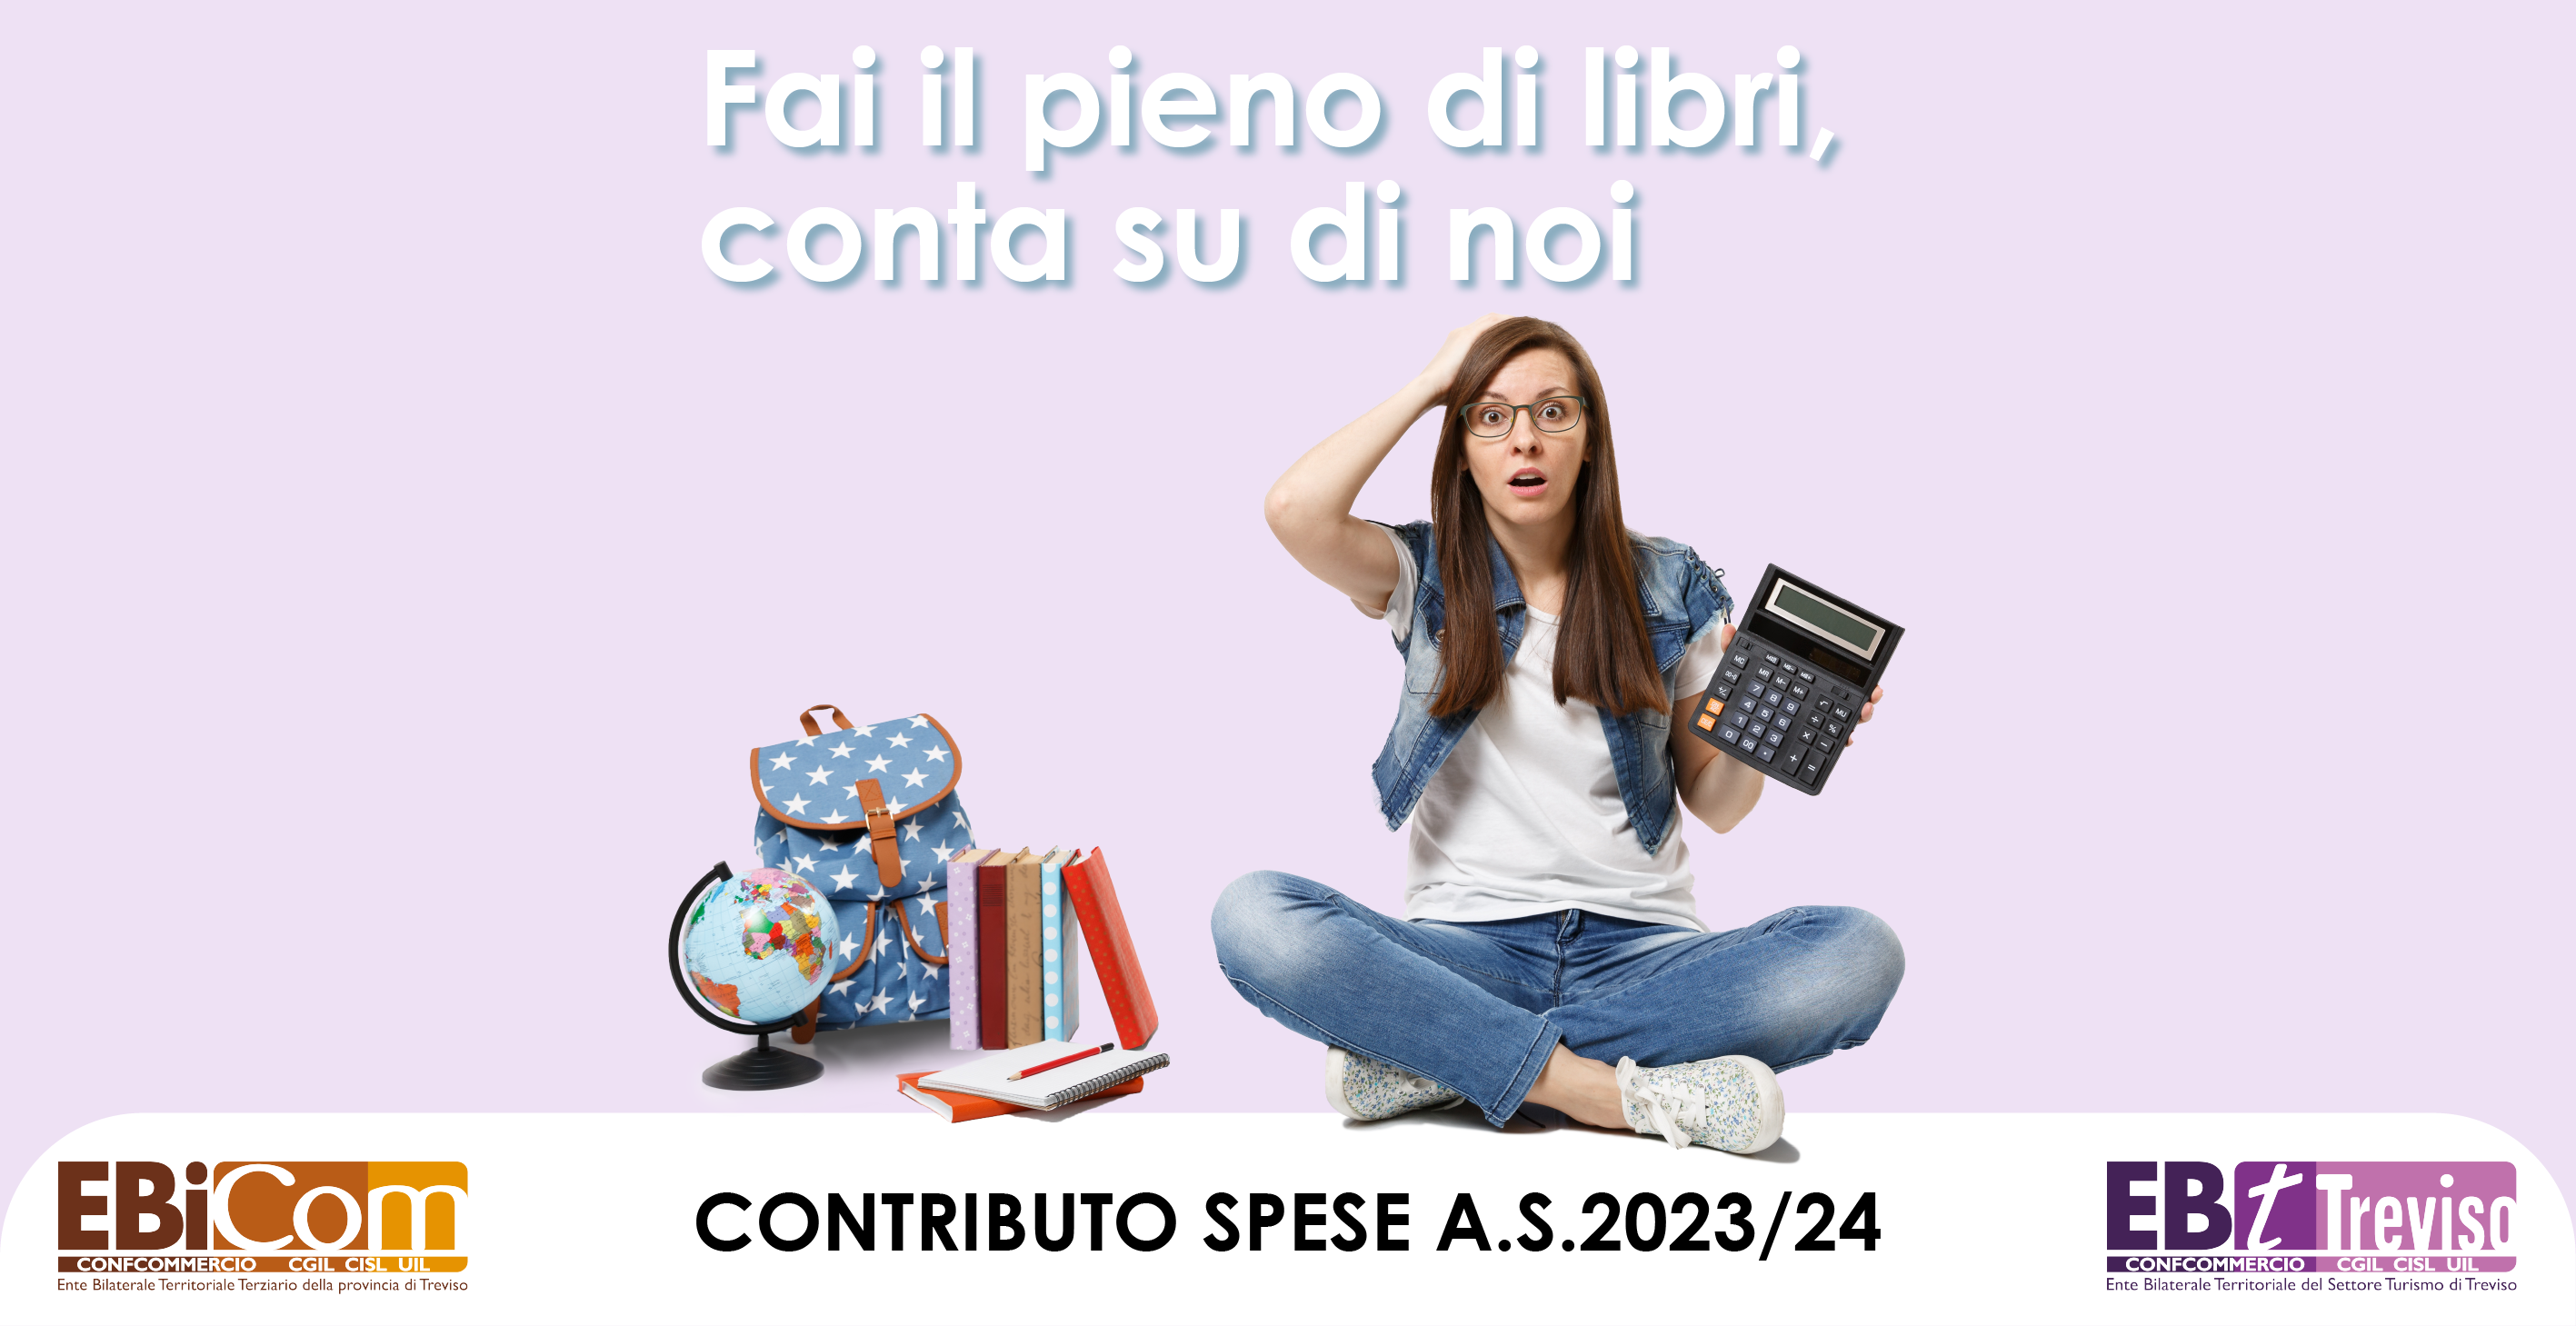 Contributo spese scolastiche dei figli a.s. 2023/24 EBiCom ed EBT Treviso